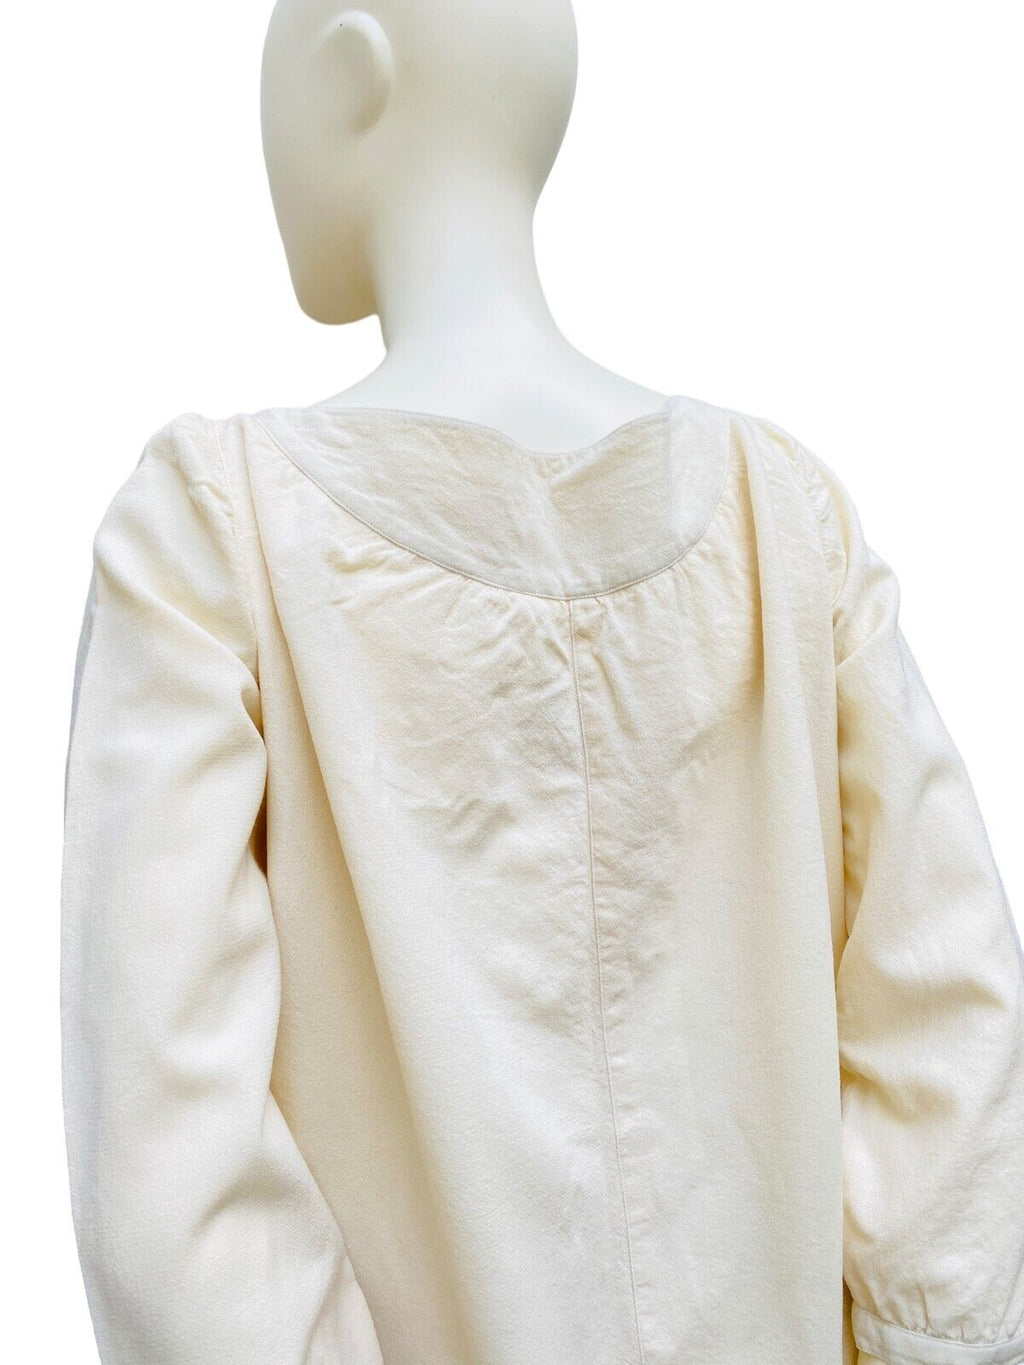 70s vintage beige wool dress Size 0 / Small